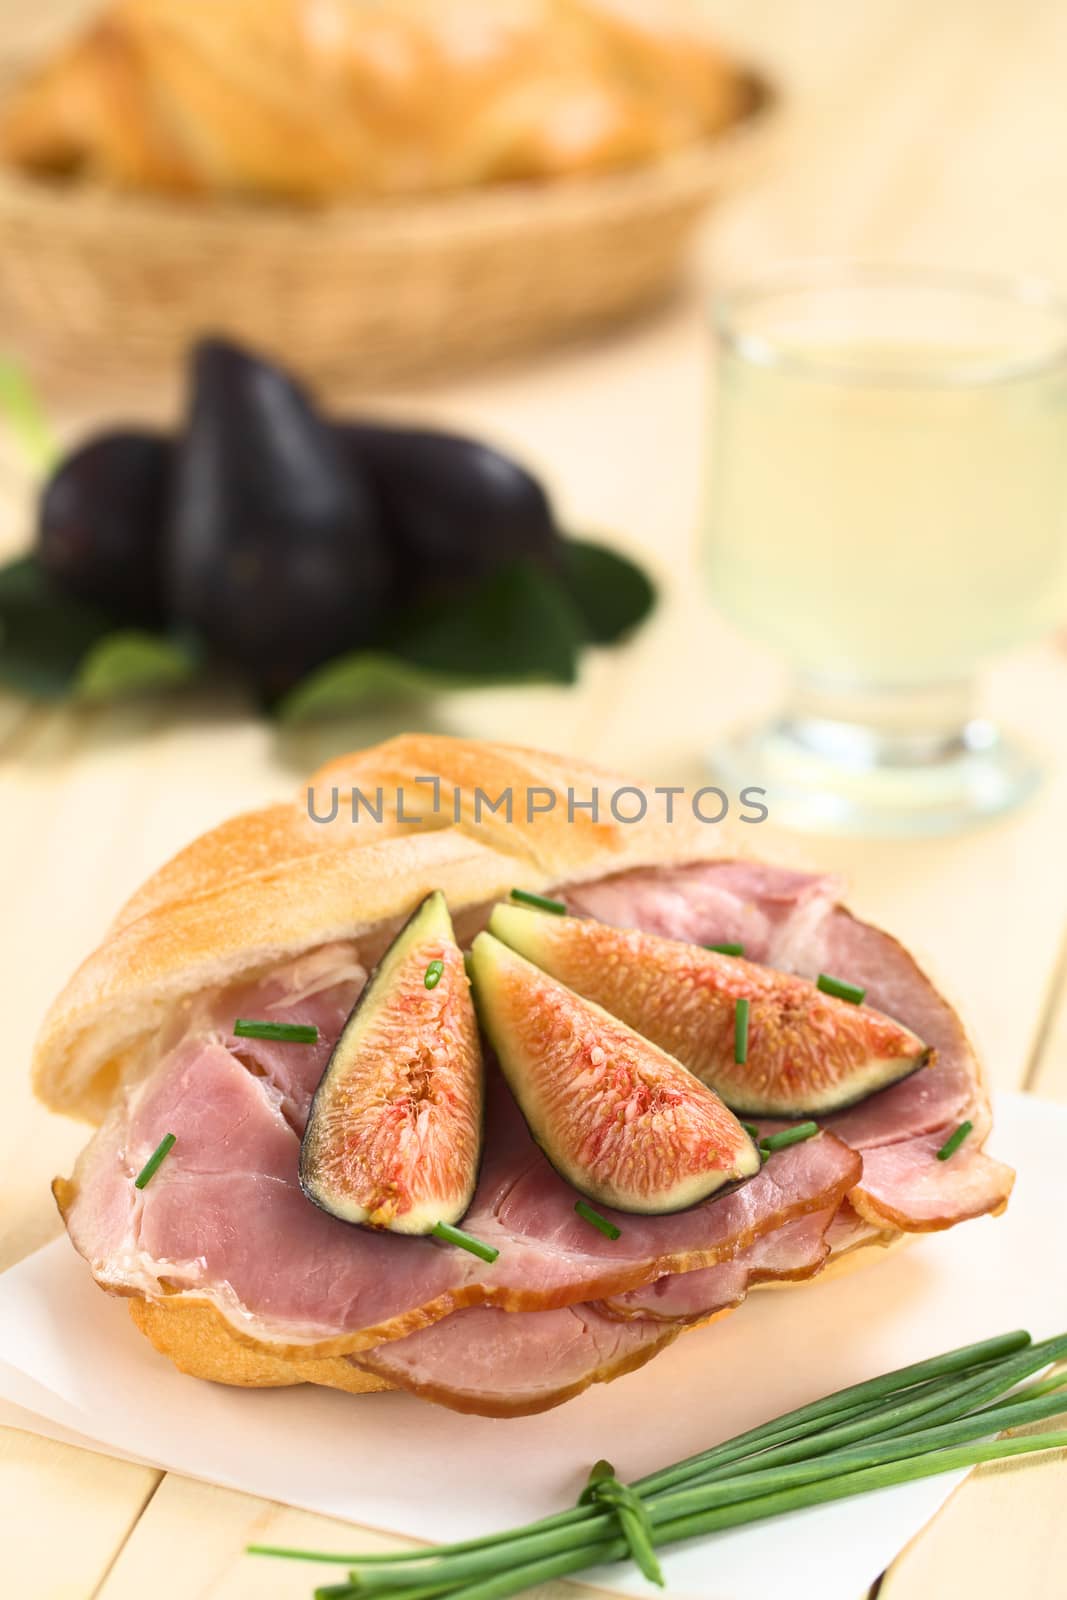 Fig and Ham Sandwich by ildi